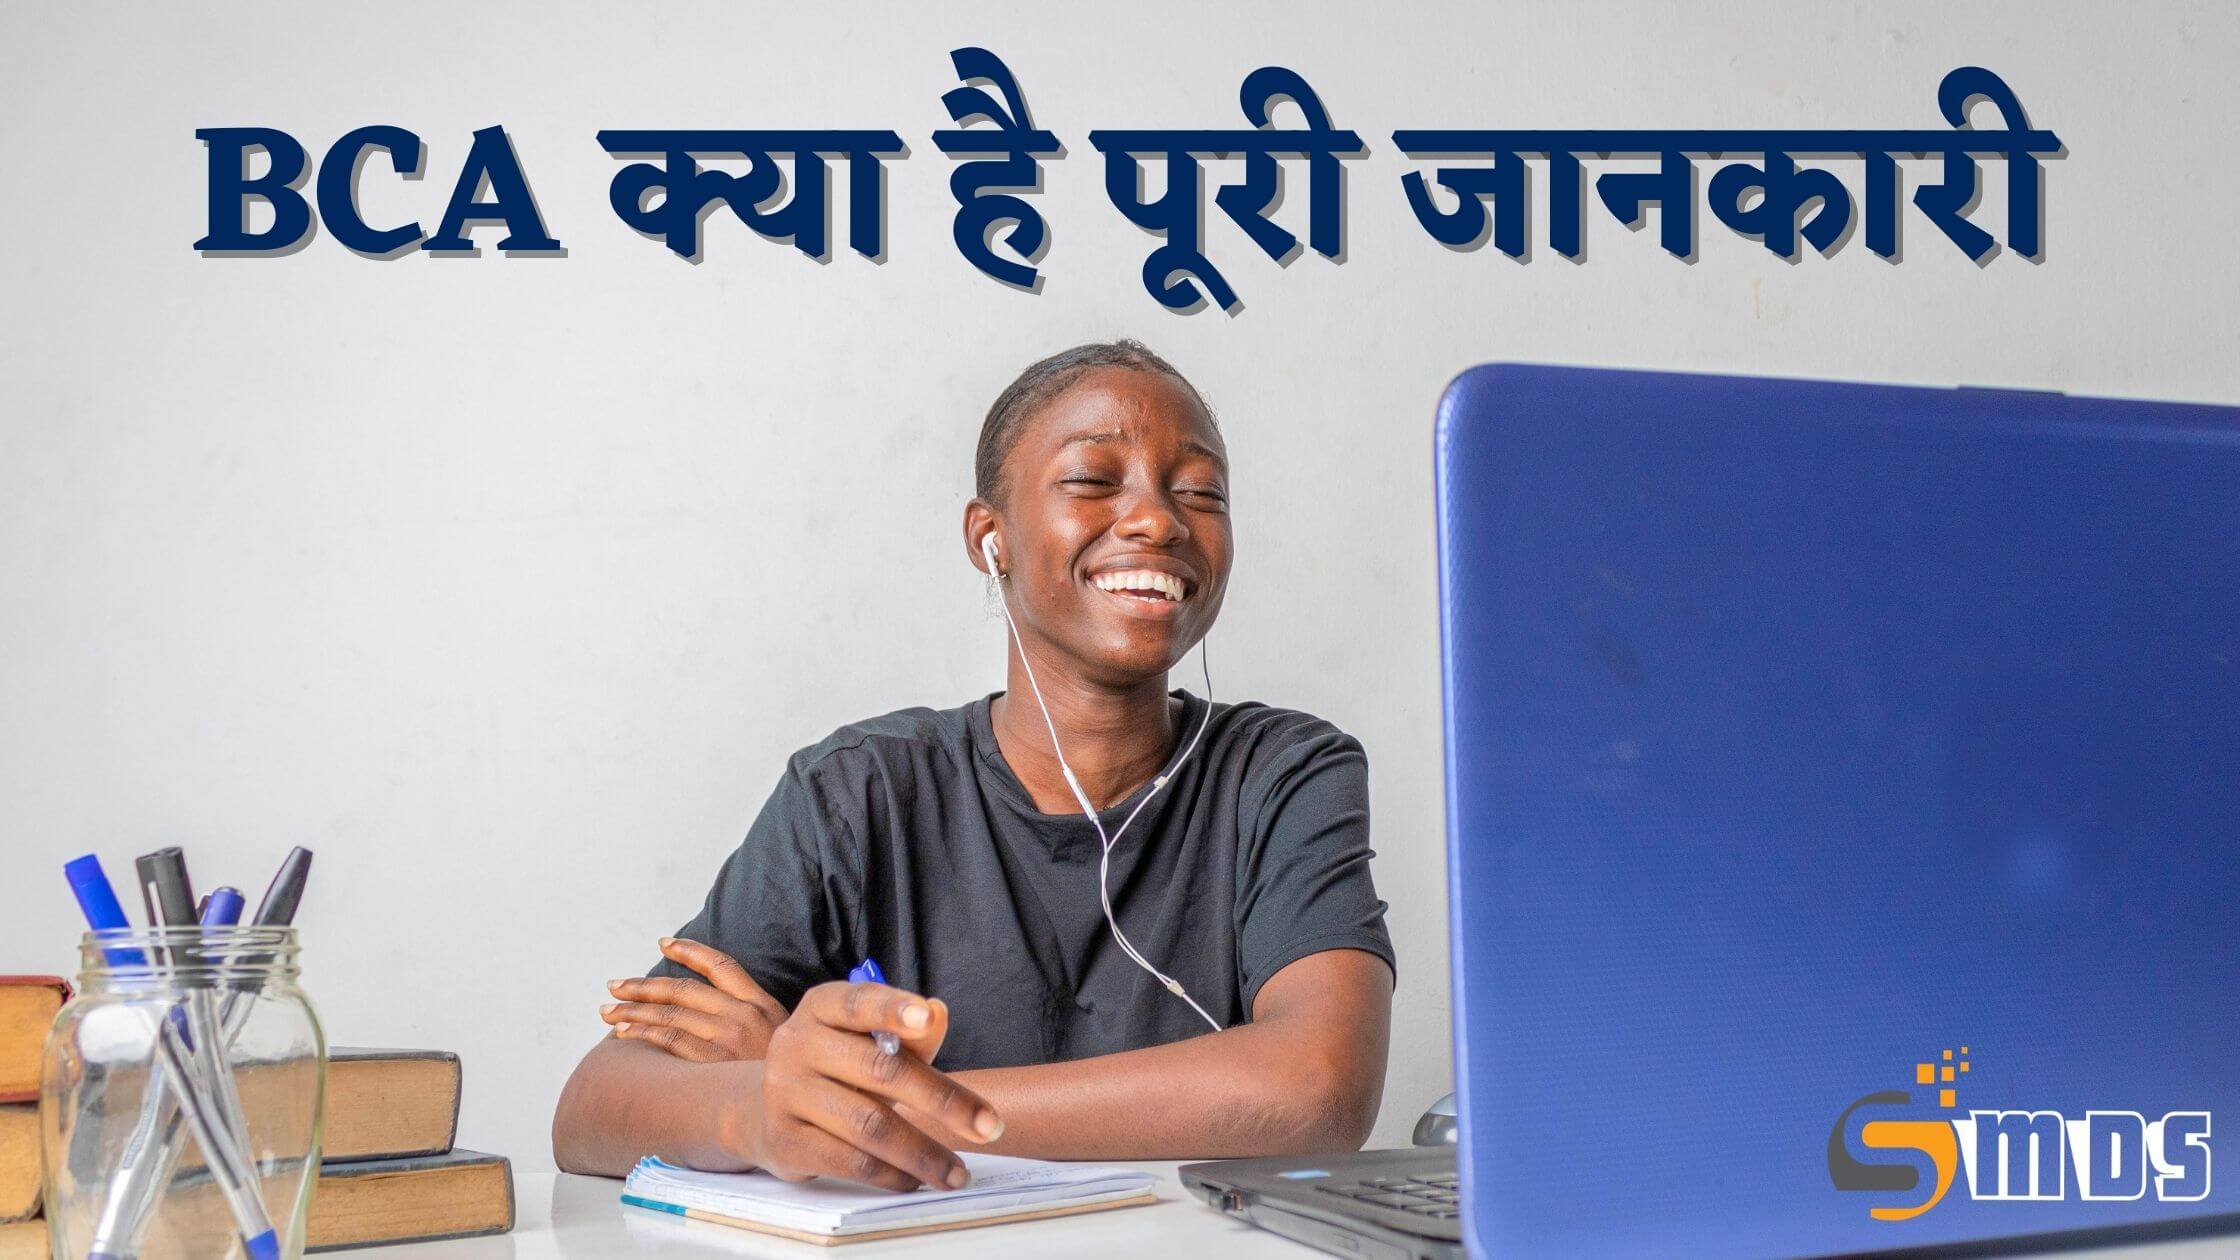 बीसीए क्या है – What is BCA in Hindi